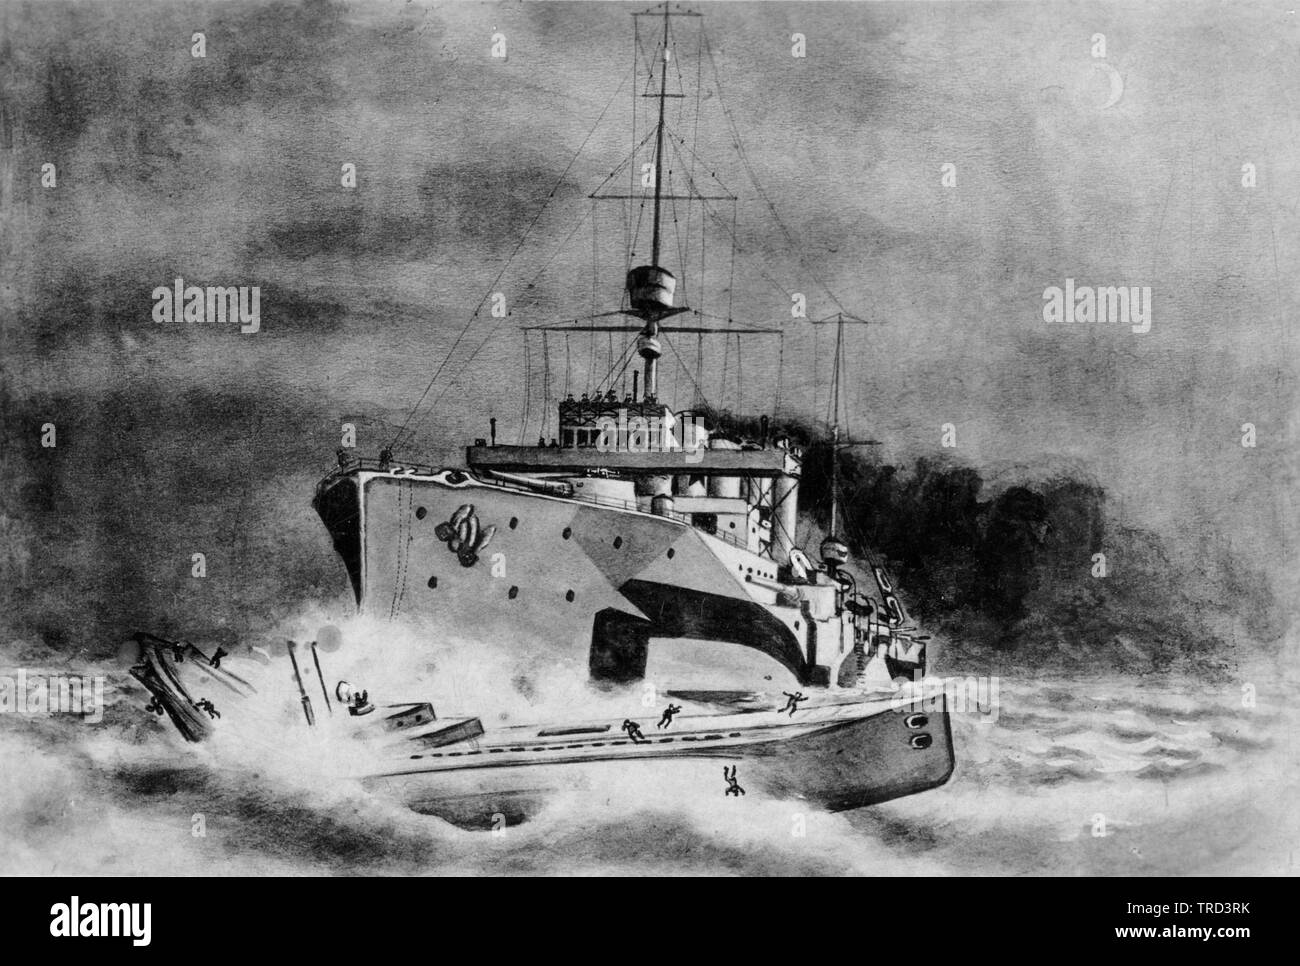 Artistes contemporains impression du croiseur de la Marine royale HMS Roxburgh elle était l'un des six croiseurs blindés de classe Devonshire construits pour la Marine royale au cours de la première décennie du 20th siècle. Banque D'Images